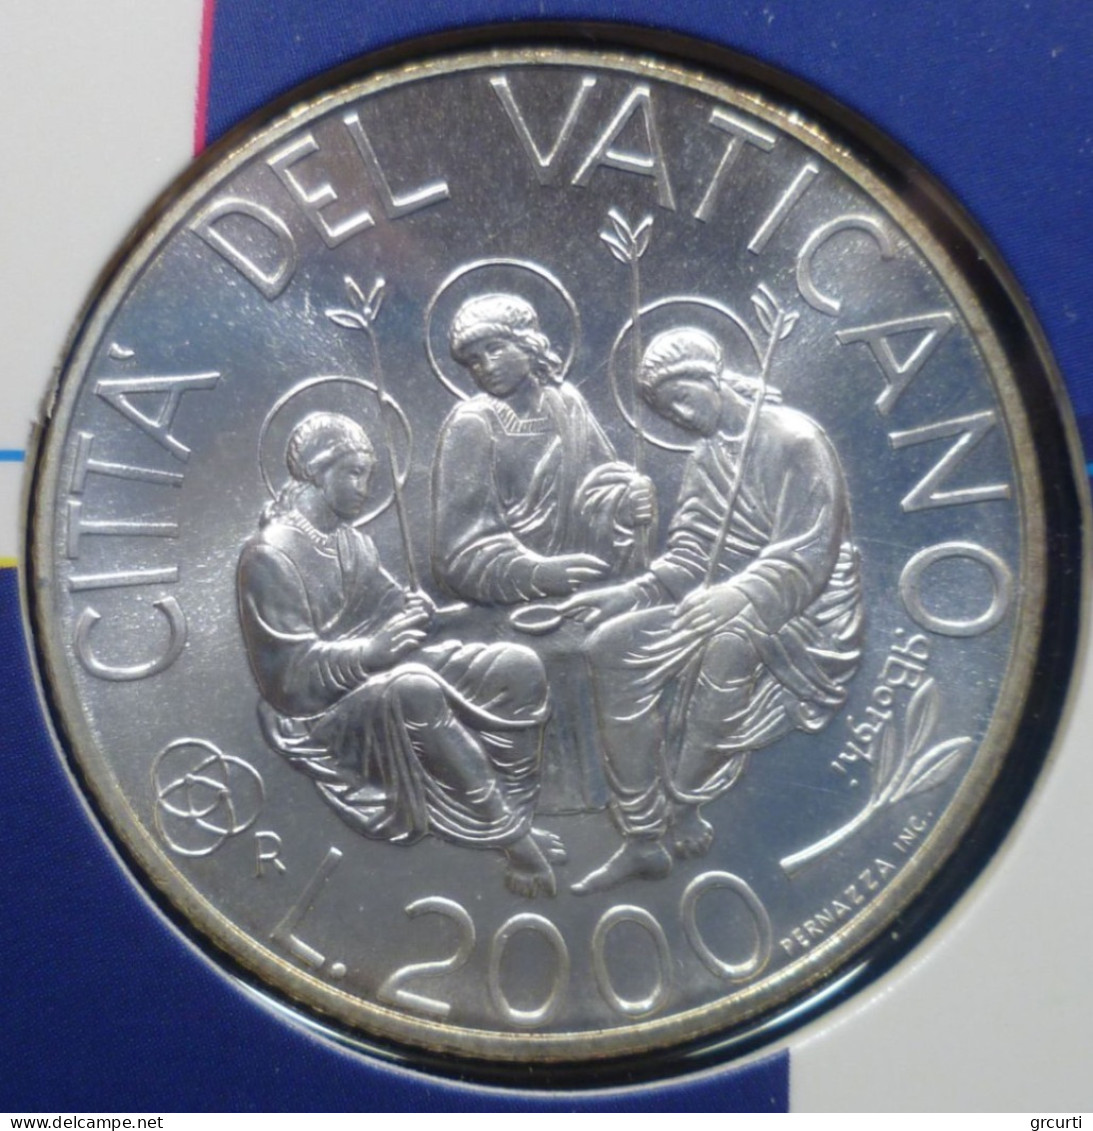 Vaticano - 2.000 Lire 2000 - Anno Santo Del 2000 - Gig. 341 - KM# 313 - Vaticano